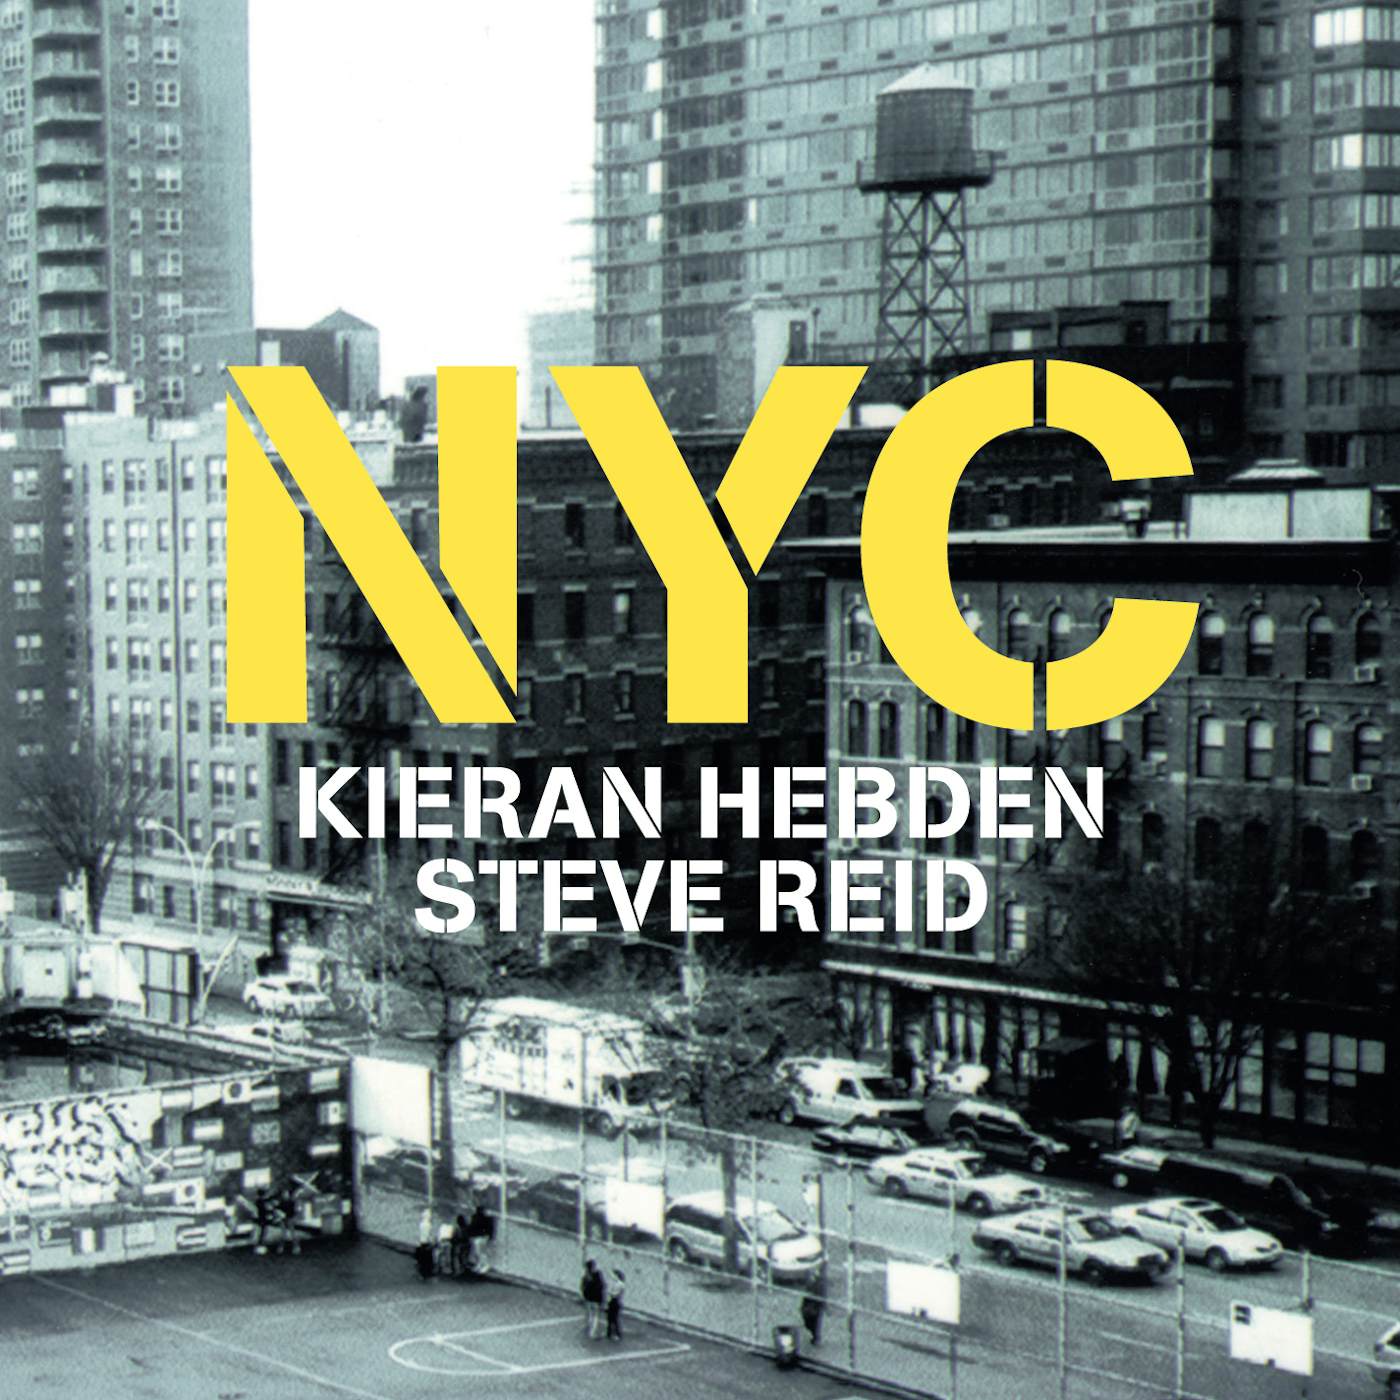 Kieran Hebden & Steve Reid NYC CD